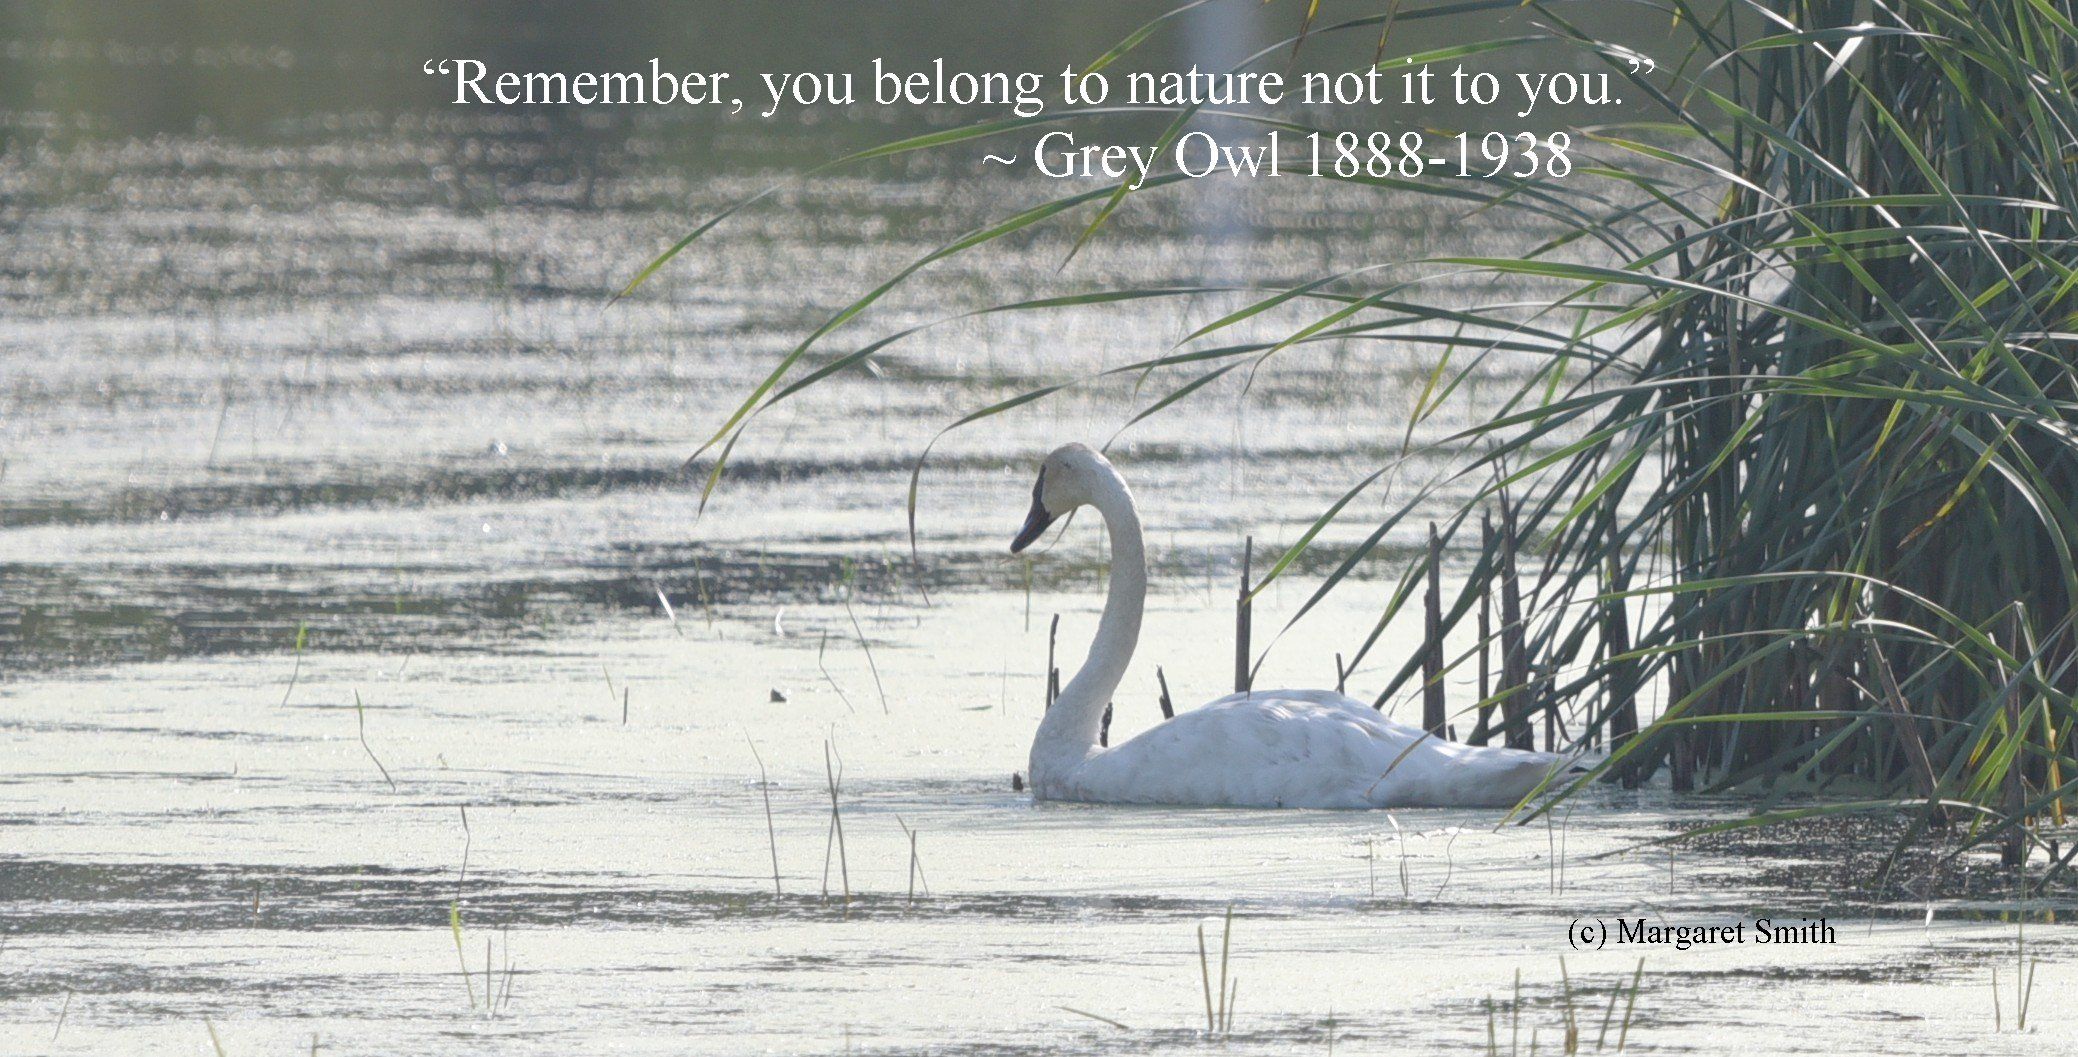 Words we like: Gray Owl's timeless wisdom